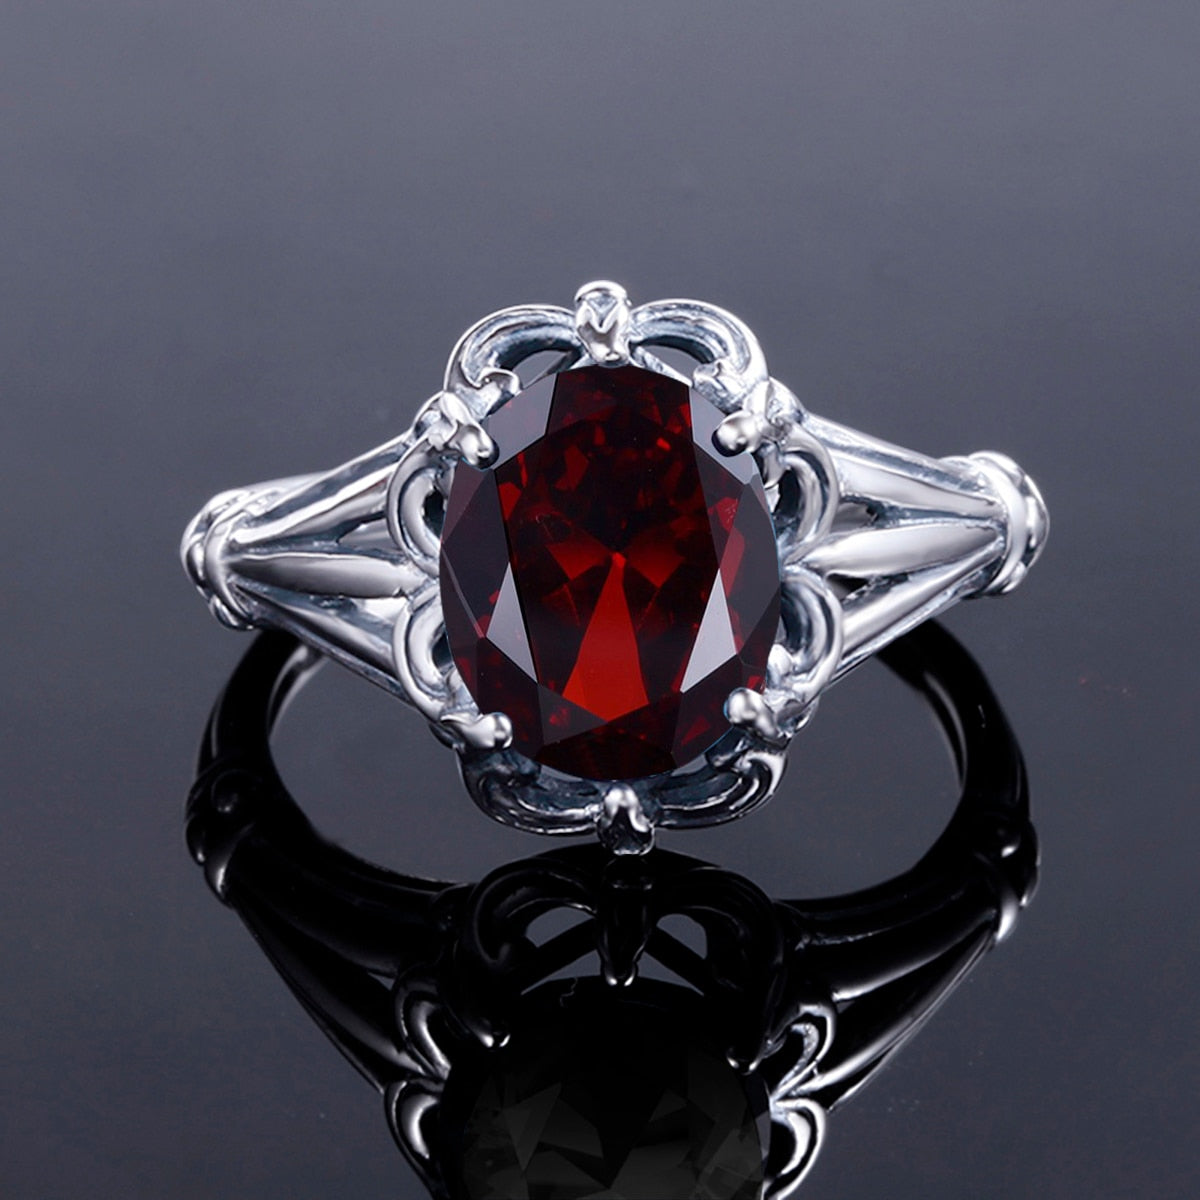 100% 925 Sterling Silver Rings Oval Design Garnet Bohemian Handmade Victoria Wieck Rings For Women Fine Jewelry